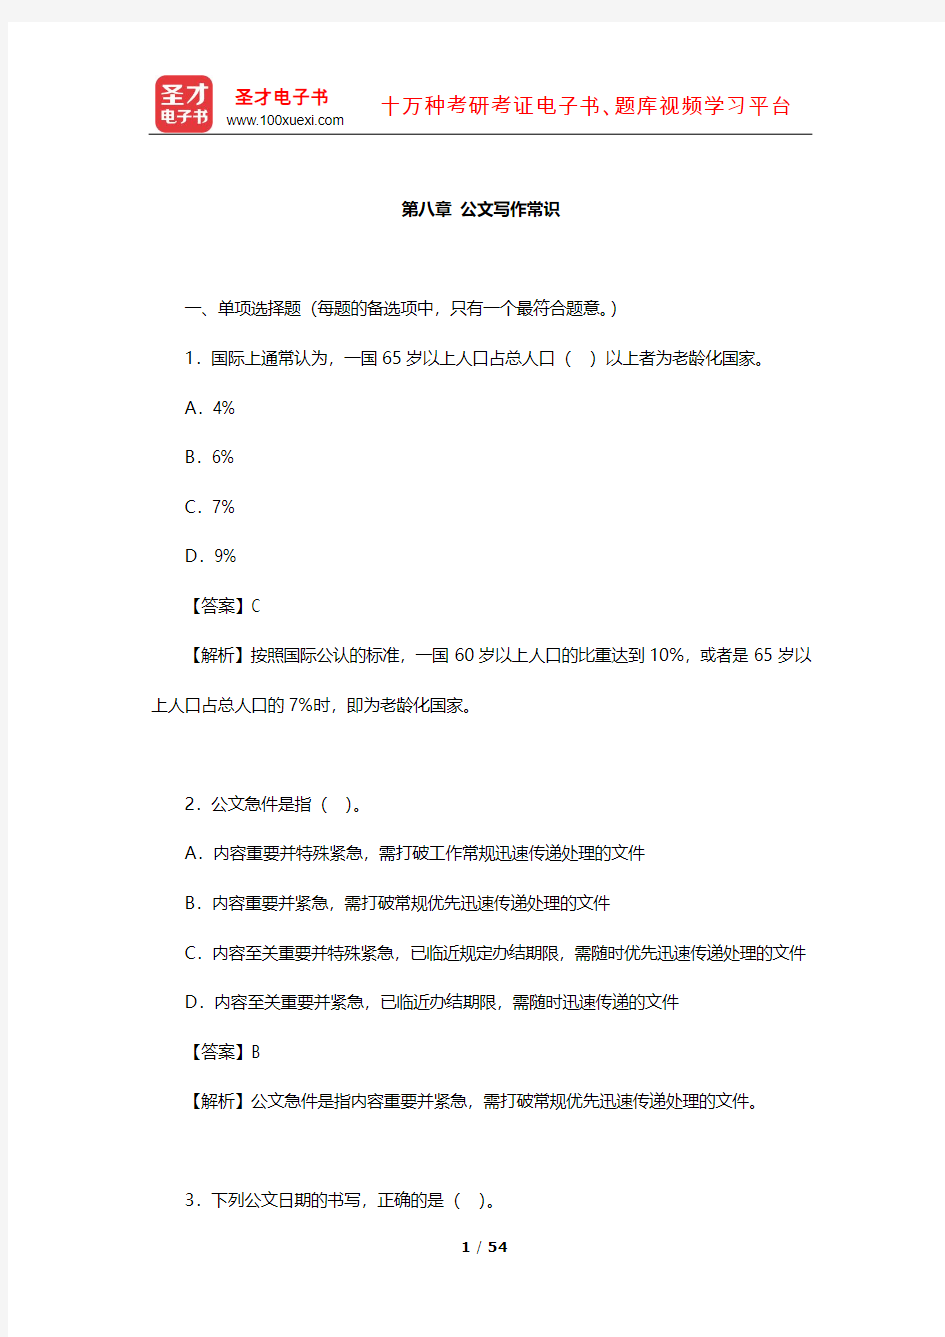 上海市社区工作者公开招聘考试《公共基础知识》 章节题库(公文写作常识)【圣才出品】